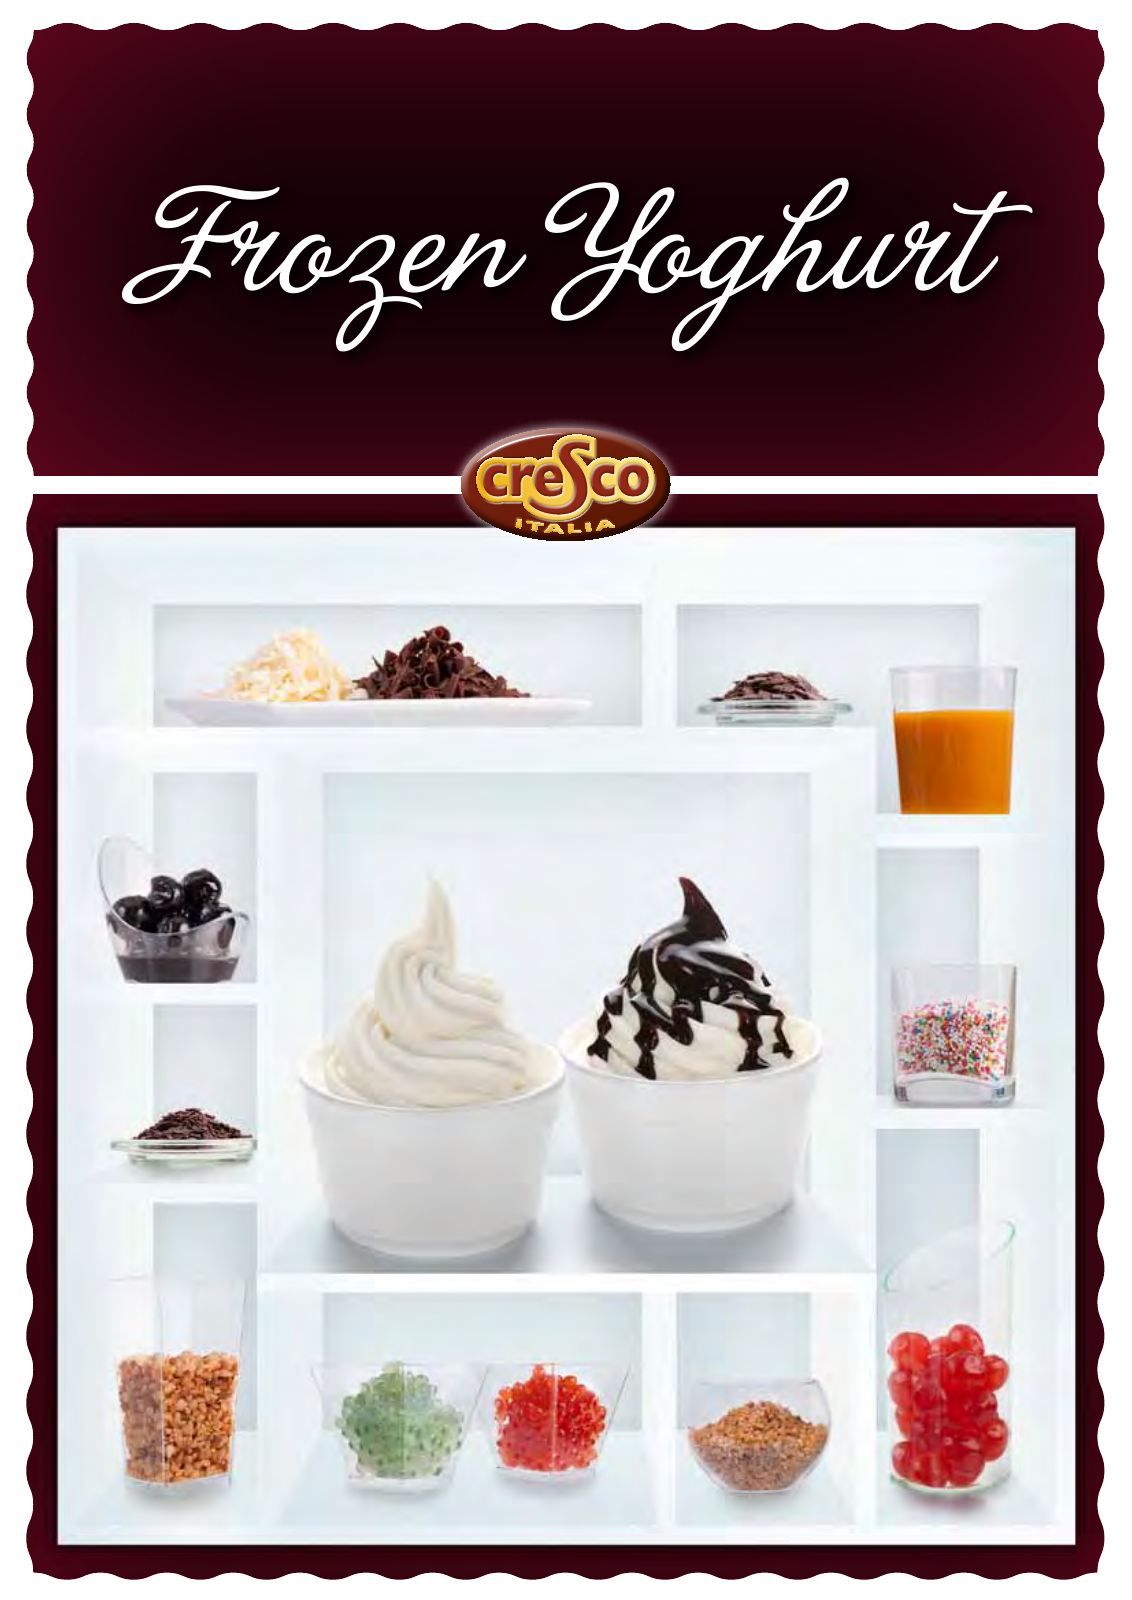 Vorschau Frozen Yoghurt Seite 1